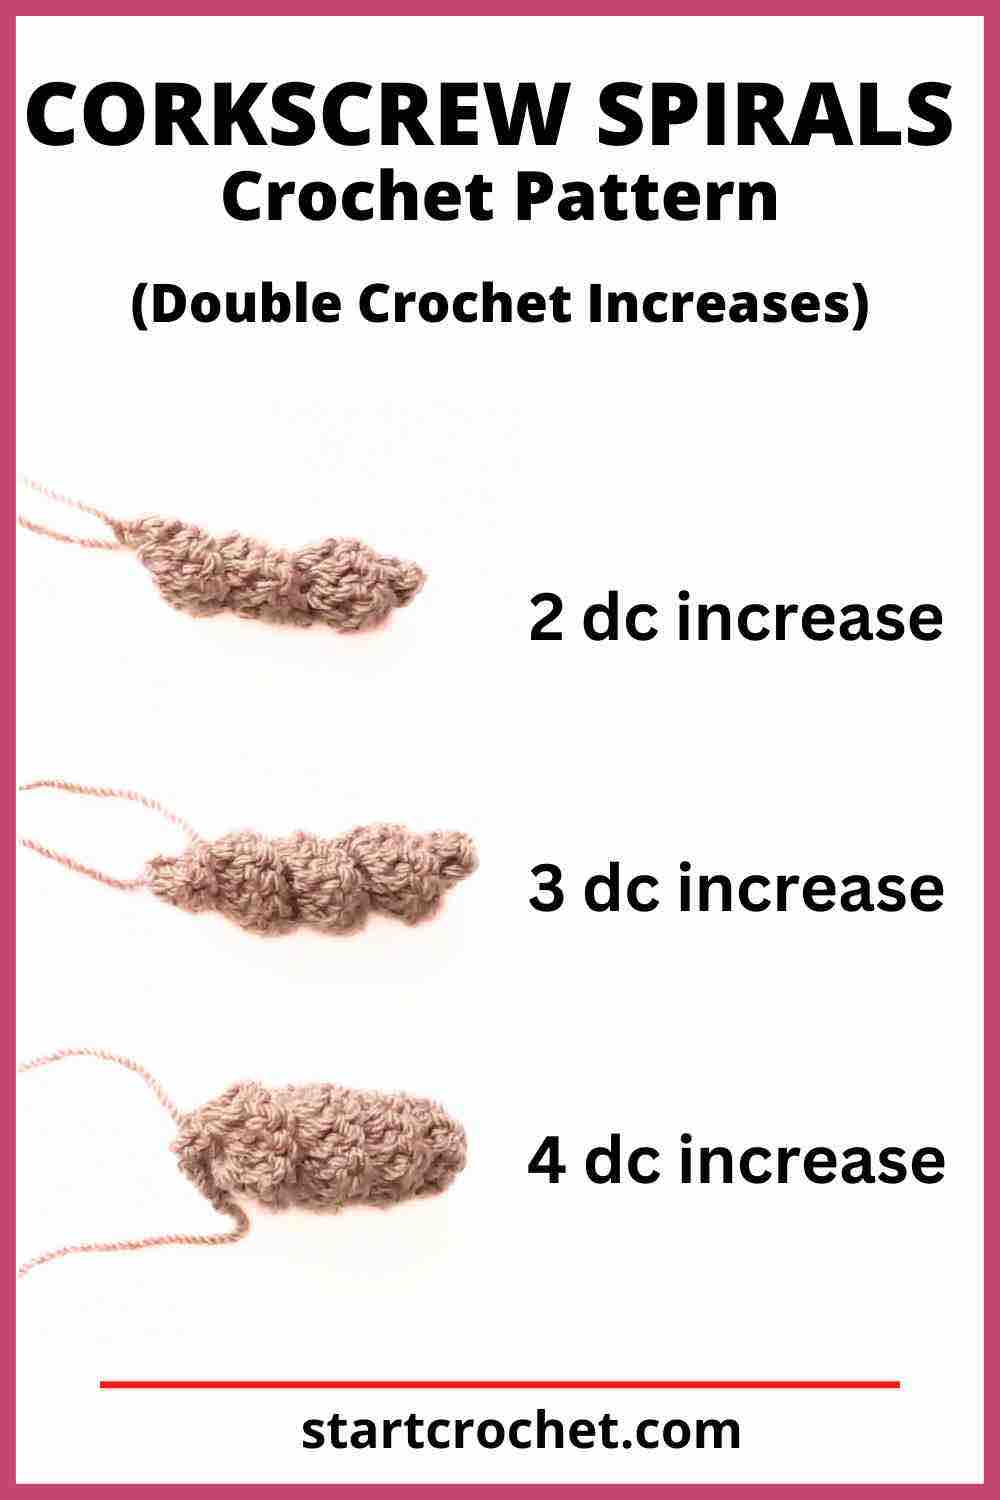 Corkscrew Spirals - Corkscrew Spiral crochet Pattern hdc increase (2)